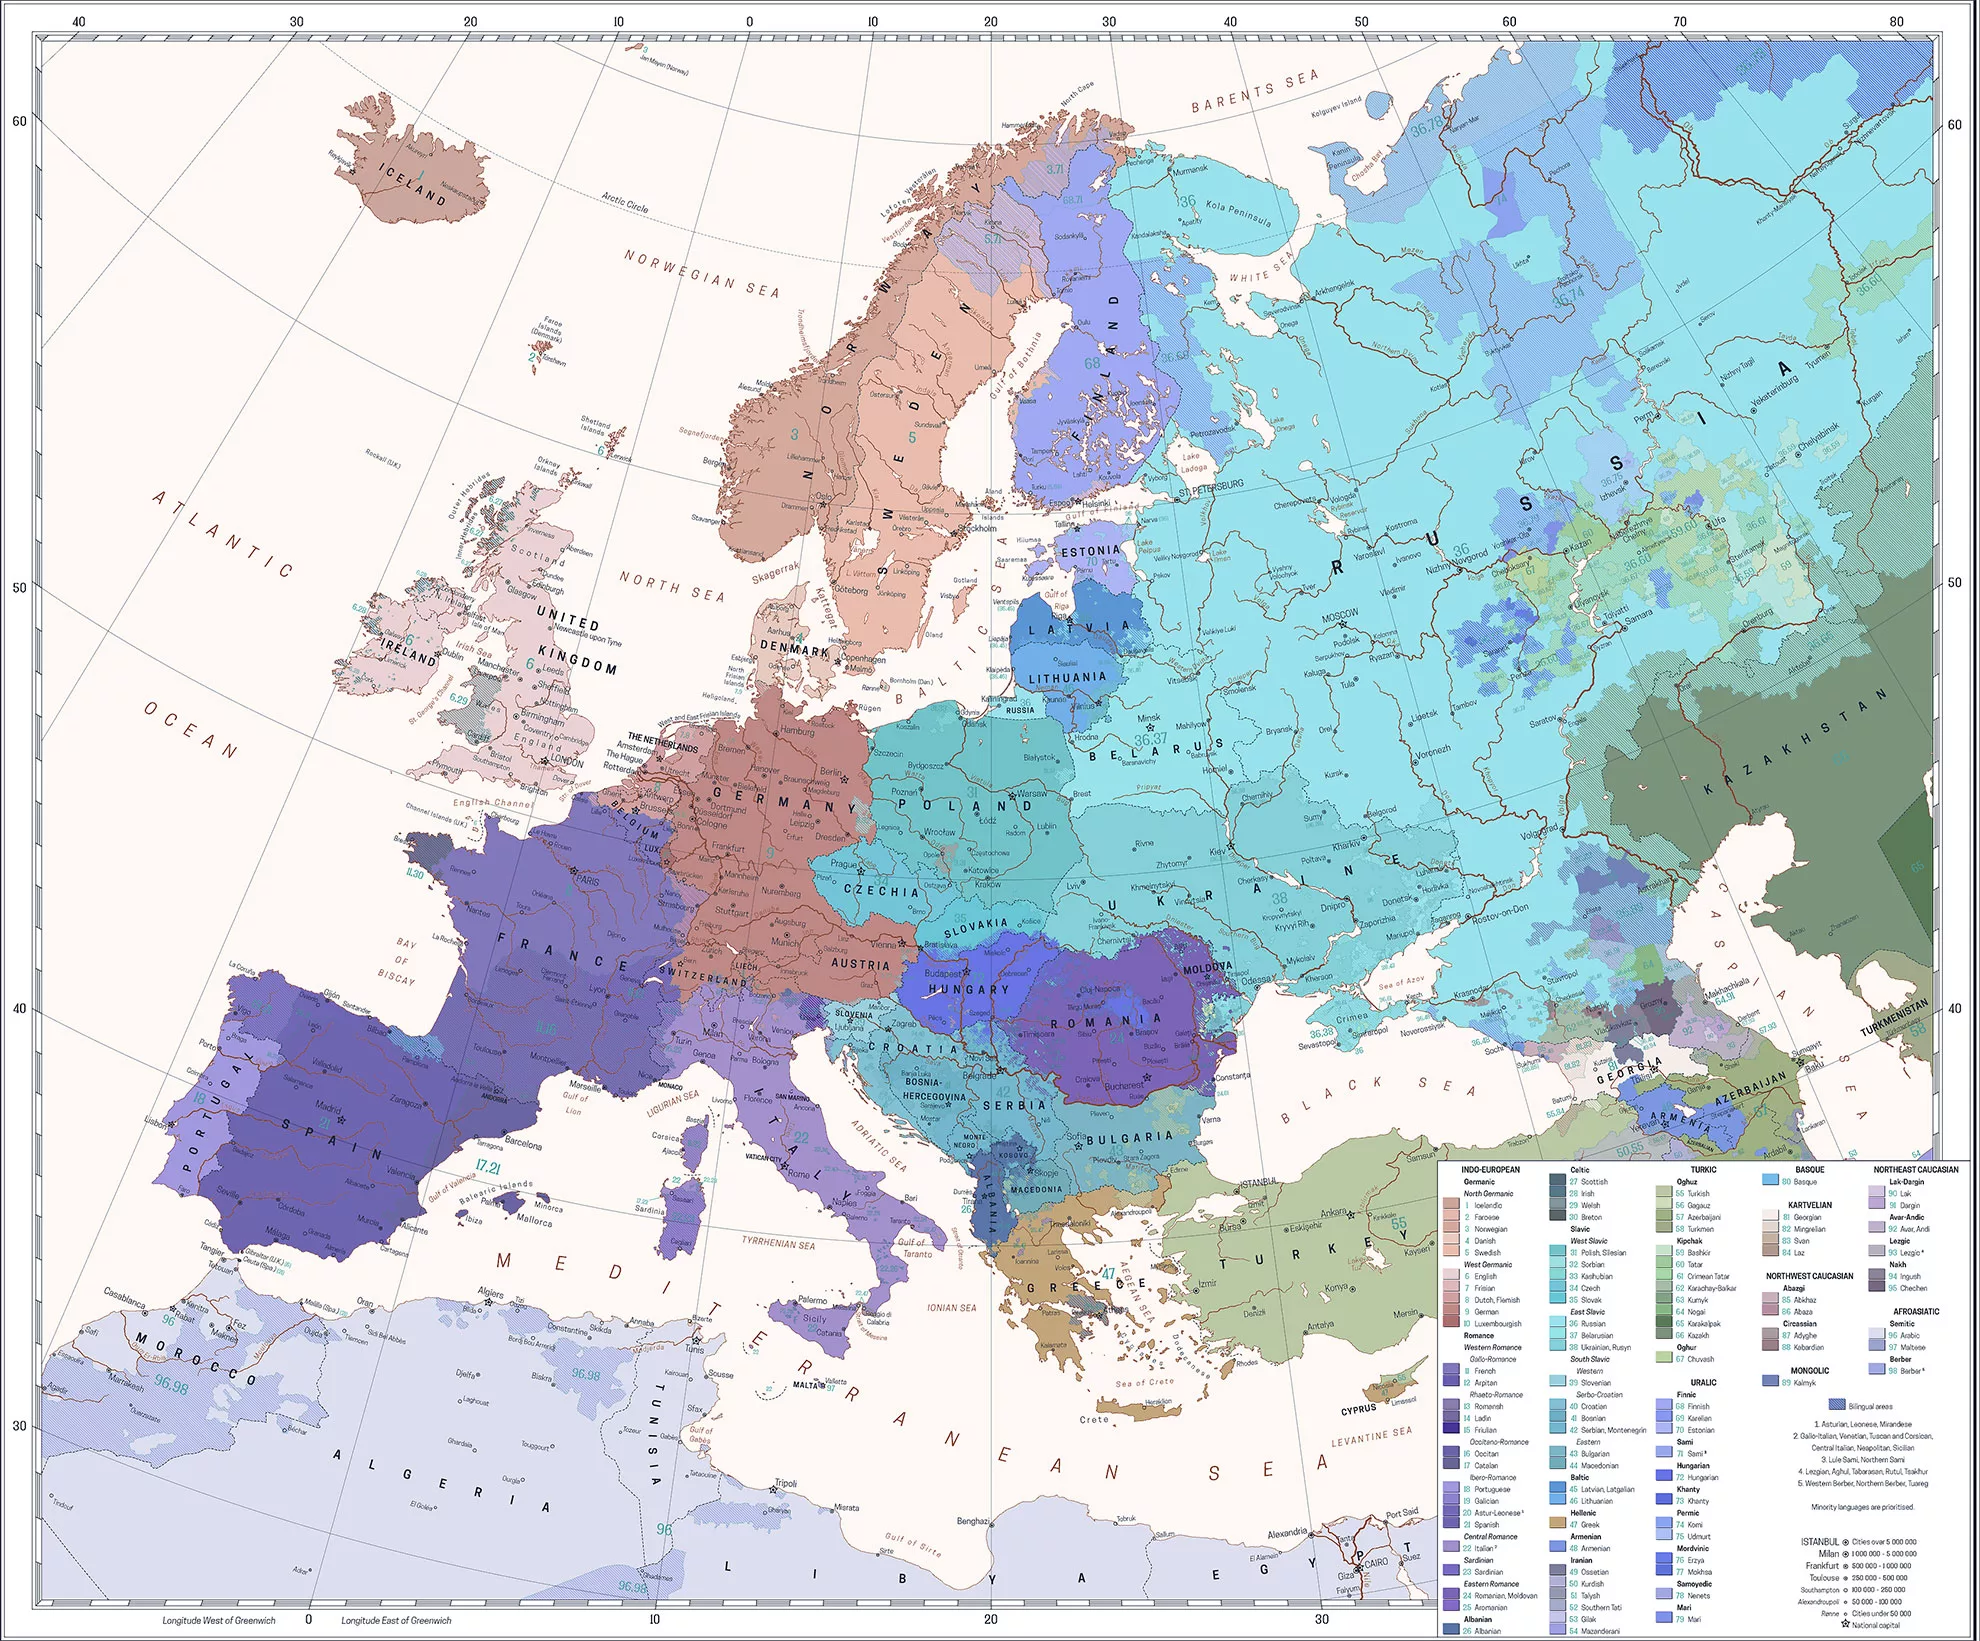 Europe map ethnic languages spoken